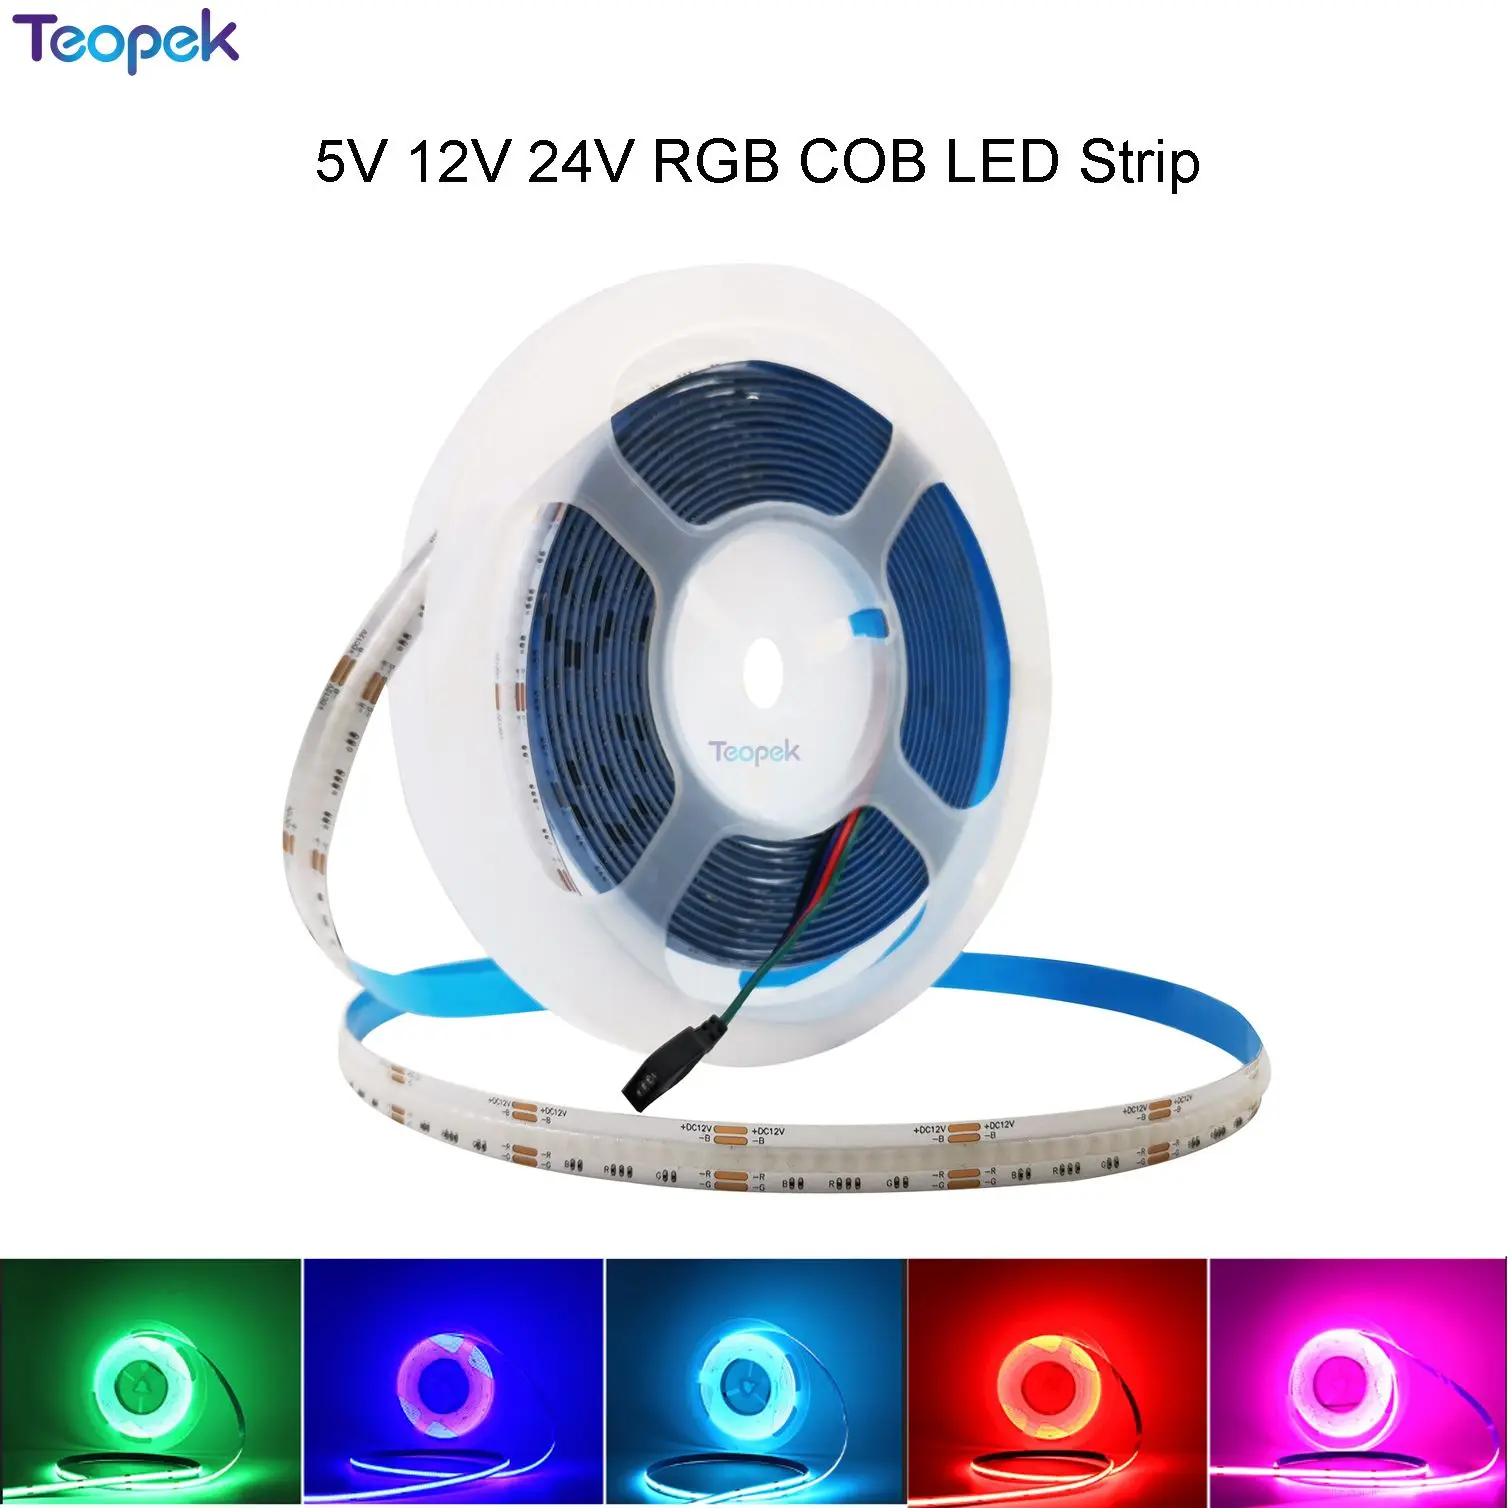 

5V 12V 24V RGB COB LED Strip Light 576LED 768LED 840LED High Density Linear Lighting Flexible Tape Lamp For Home Decoration